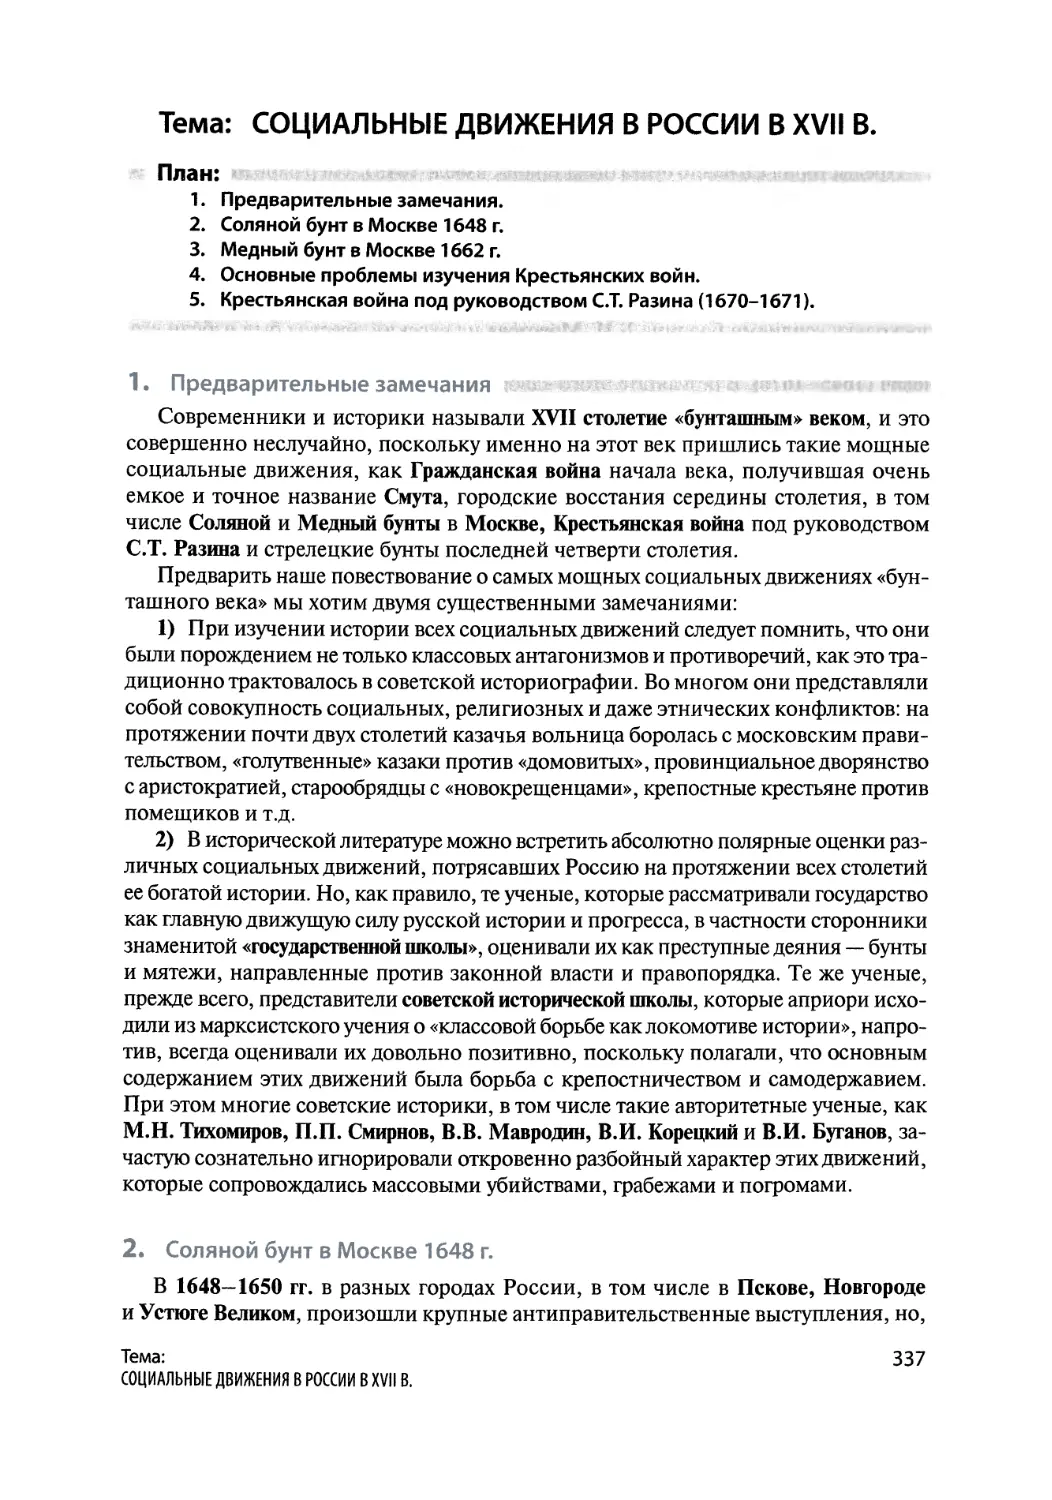 Социальные движения в России в XVII в.